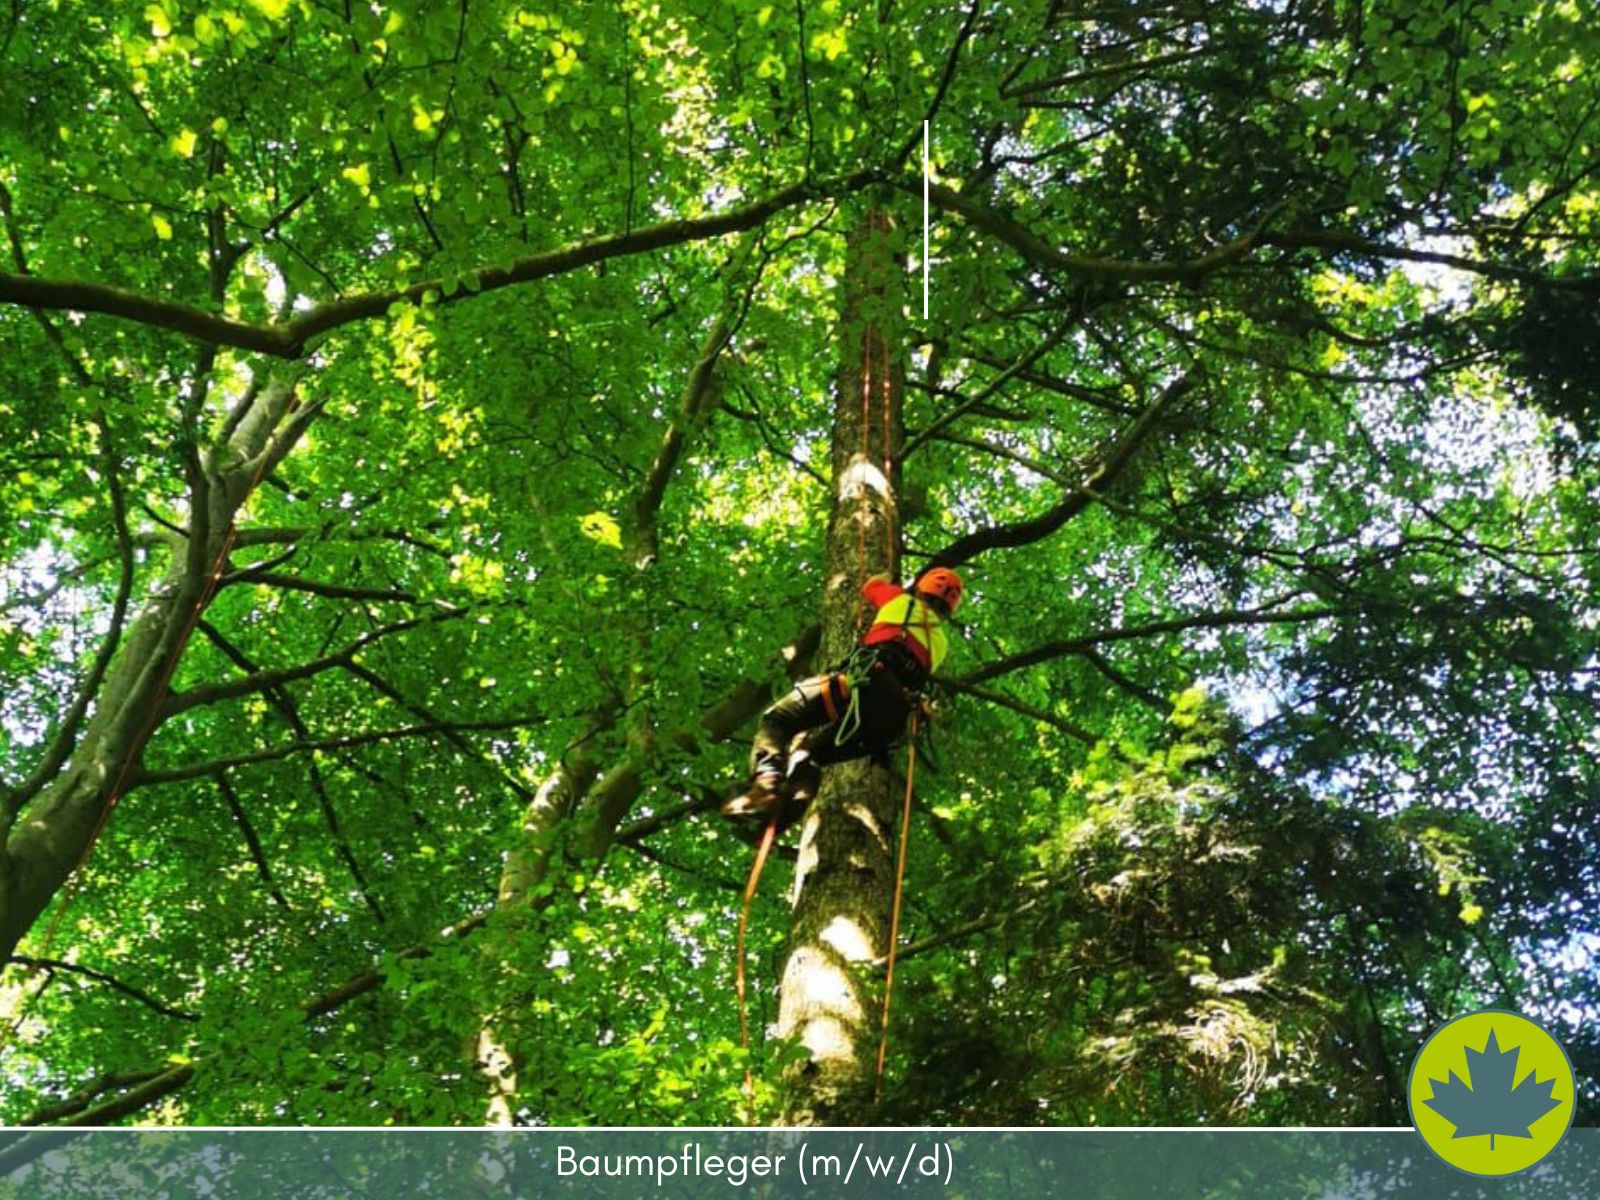 Baumpfleger - Spezialfällung - Problemfällung - Baumfällung - schwierige Bäume sicher fällen - 